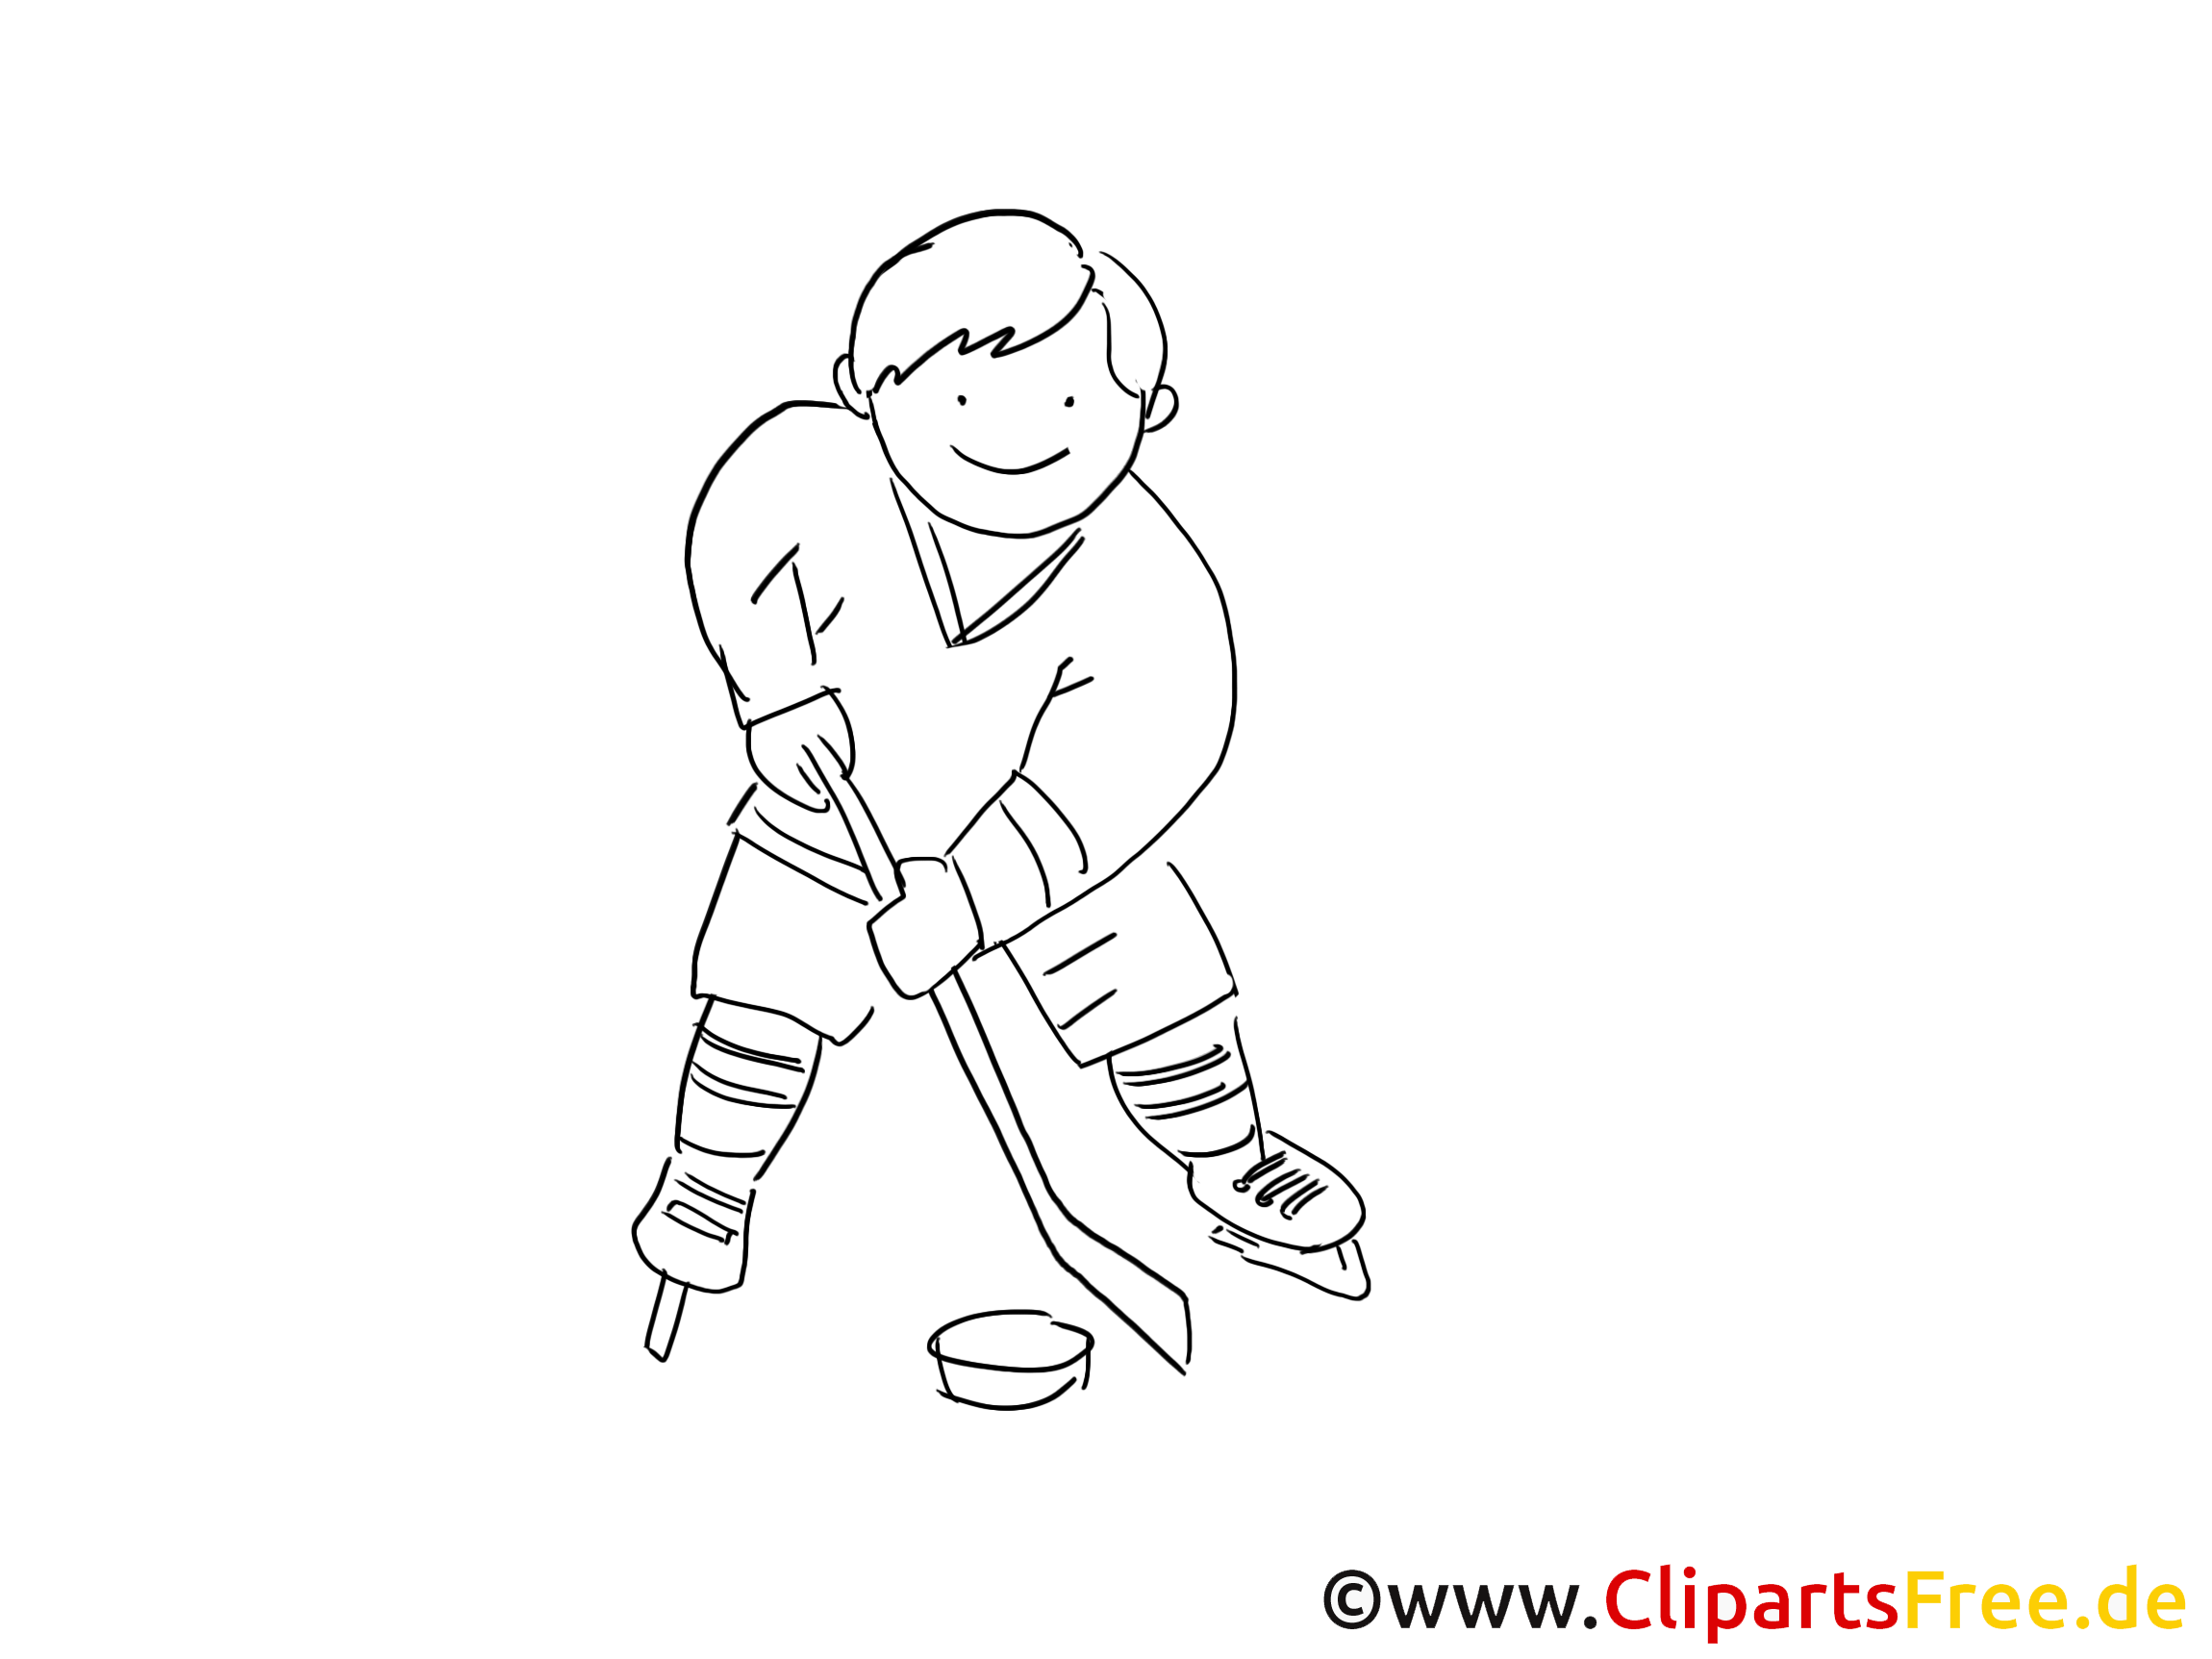 Palet image à télécharger – Hockey à colorier